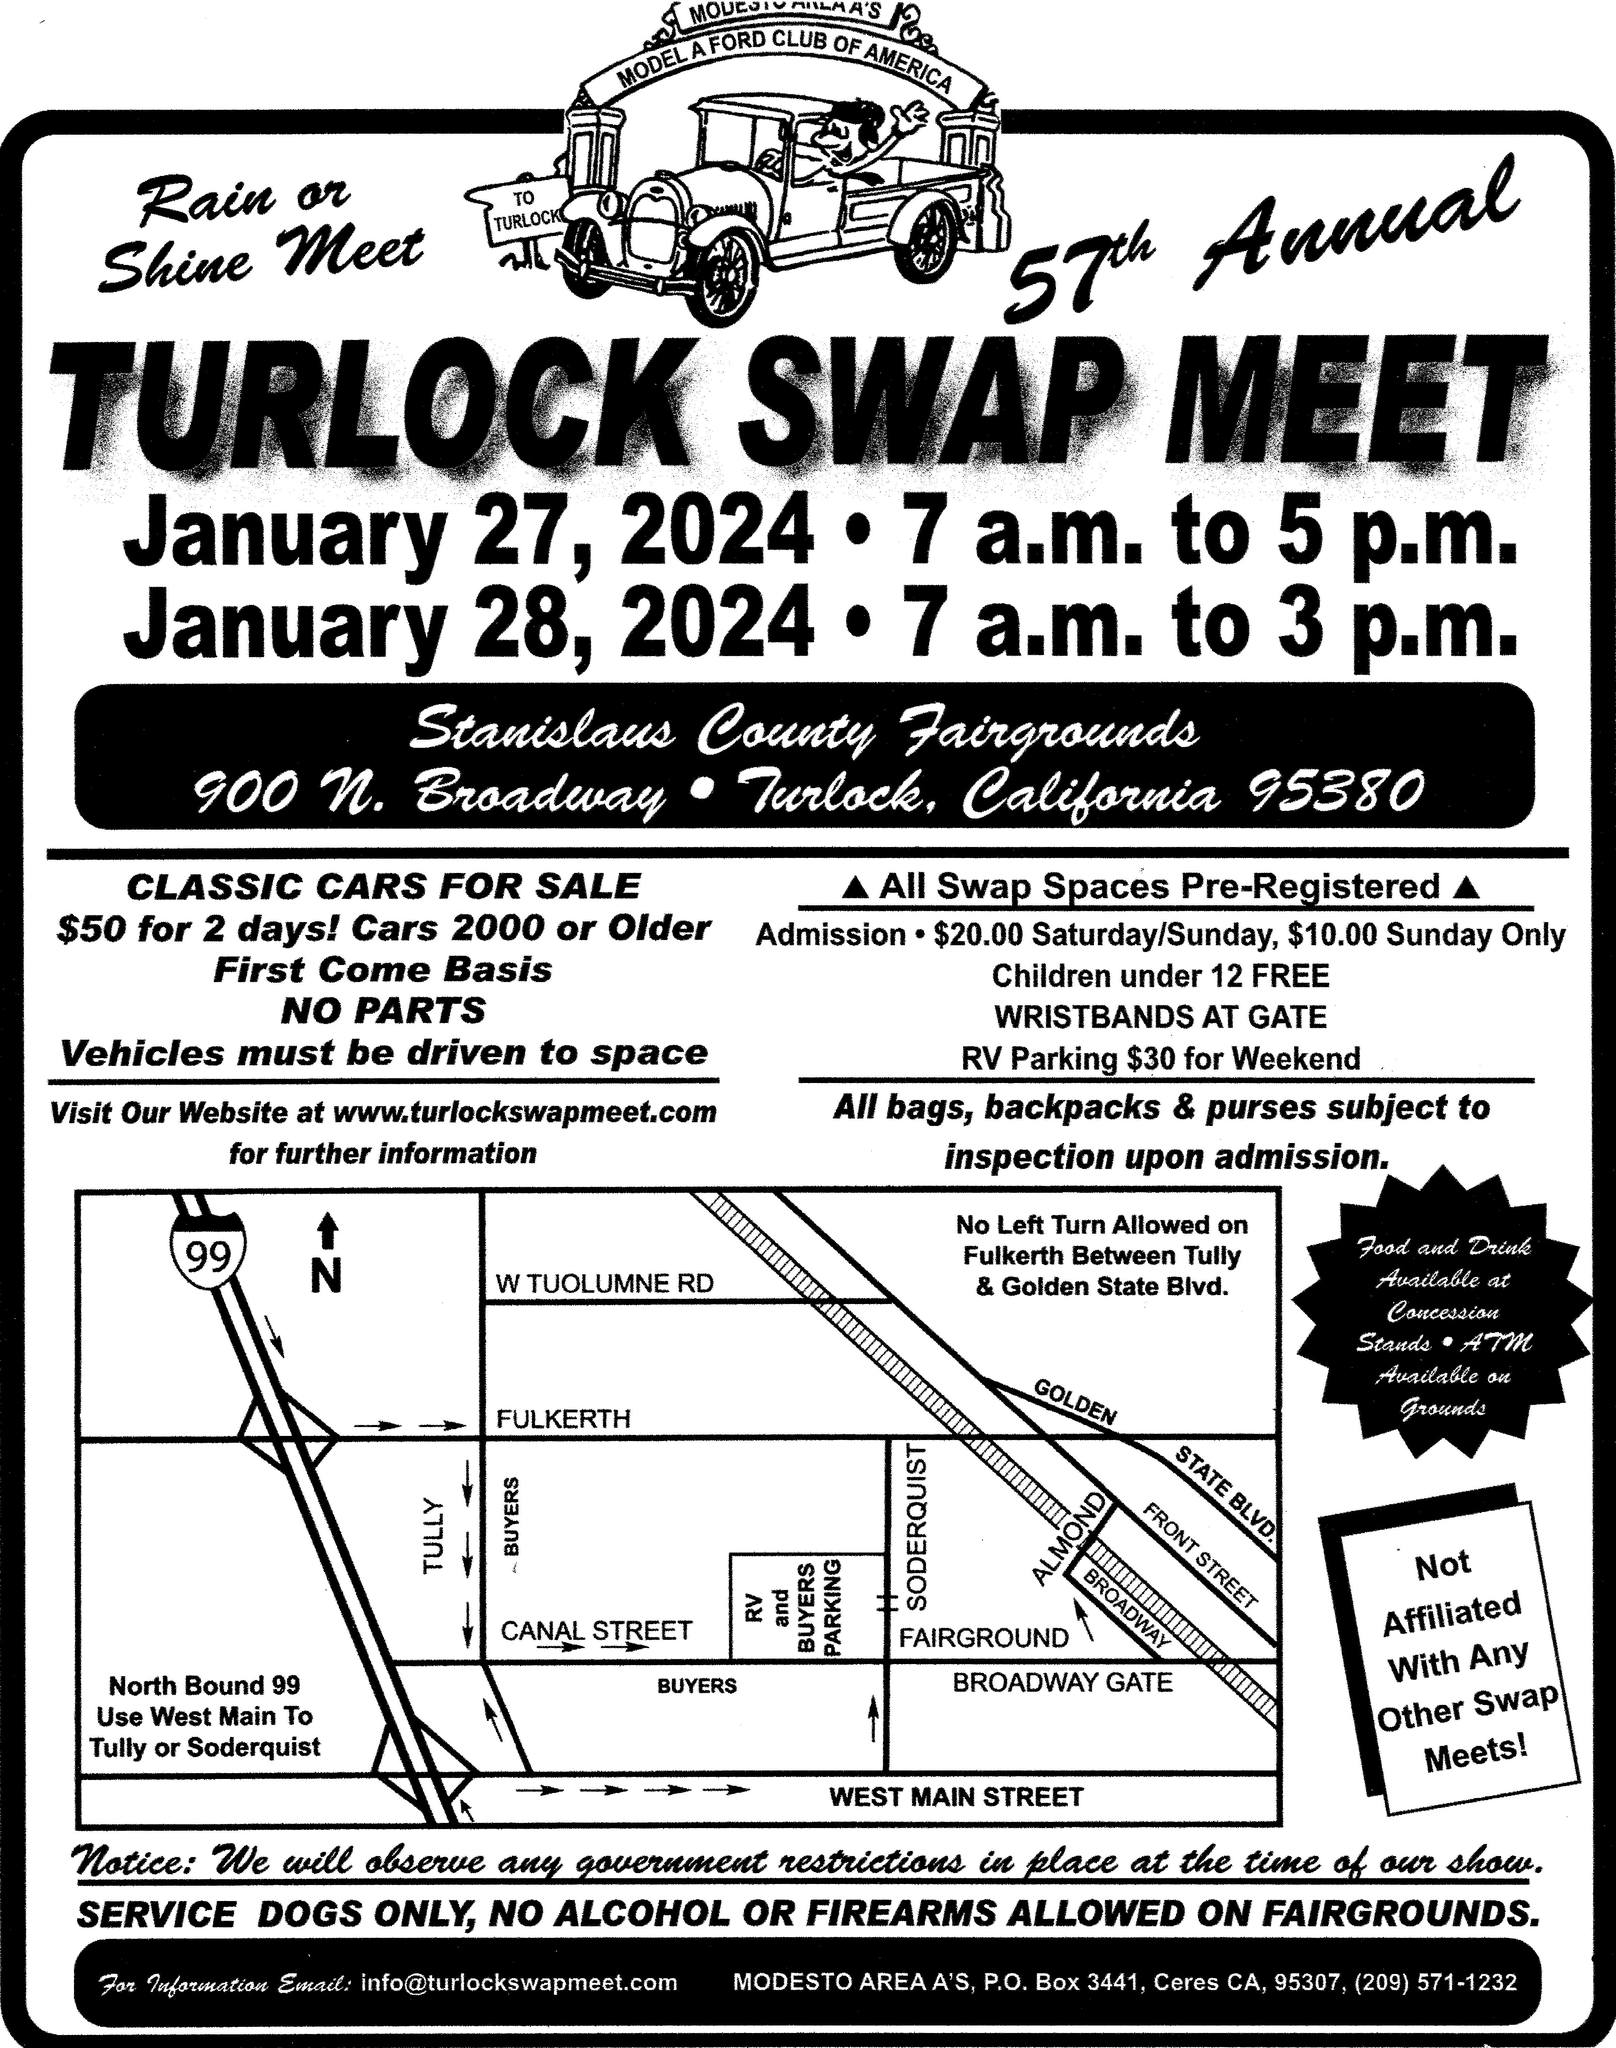 The Turlock Swap Meet